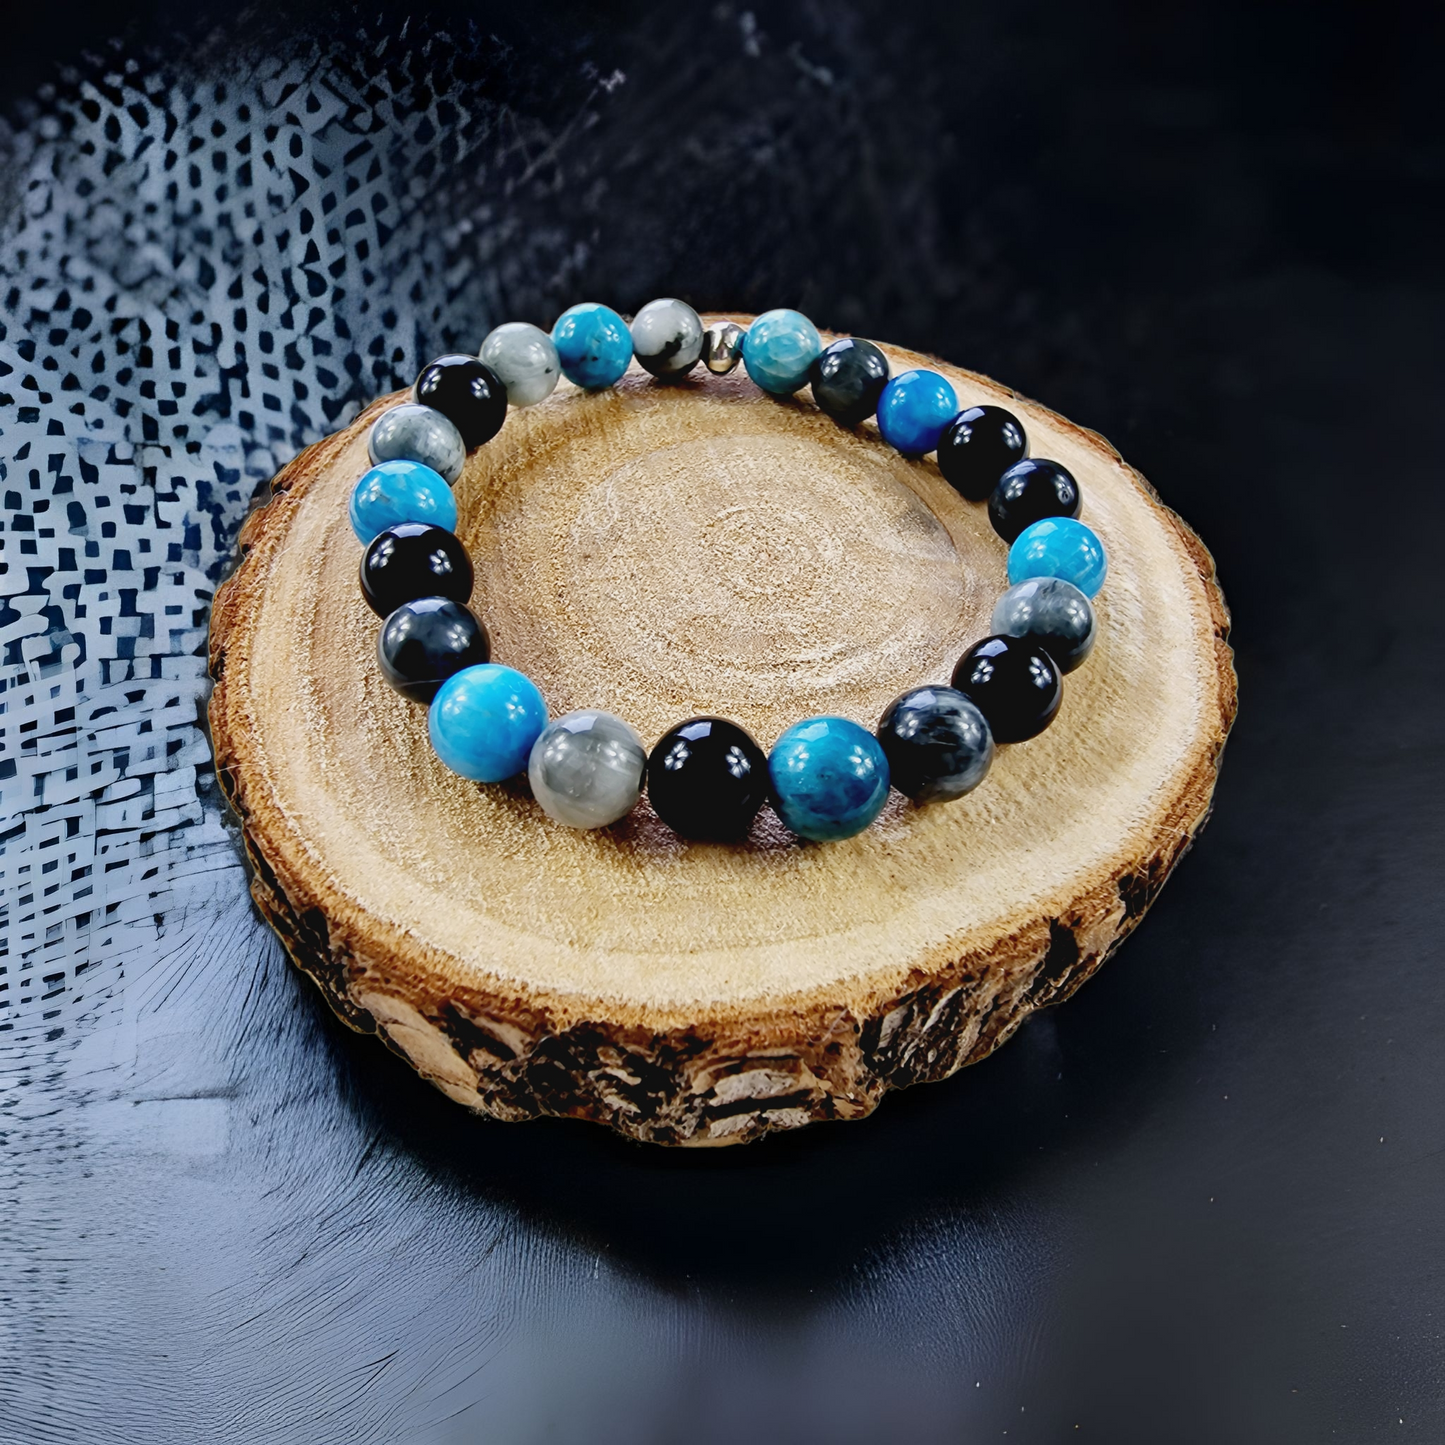 Coeur de perles, magasin de bracelets personnalisés en pierre semi-précieuses. Bracelets astrologiques, bien-être, chemin de vie.